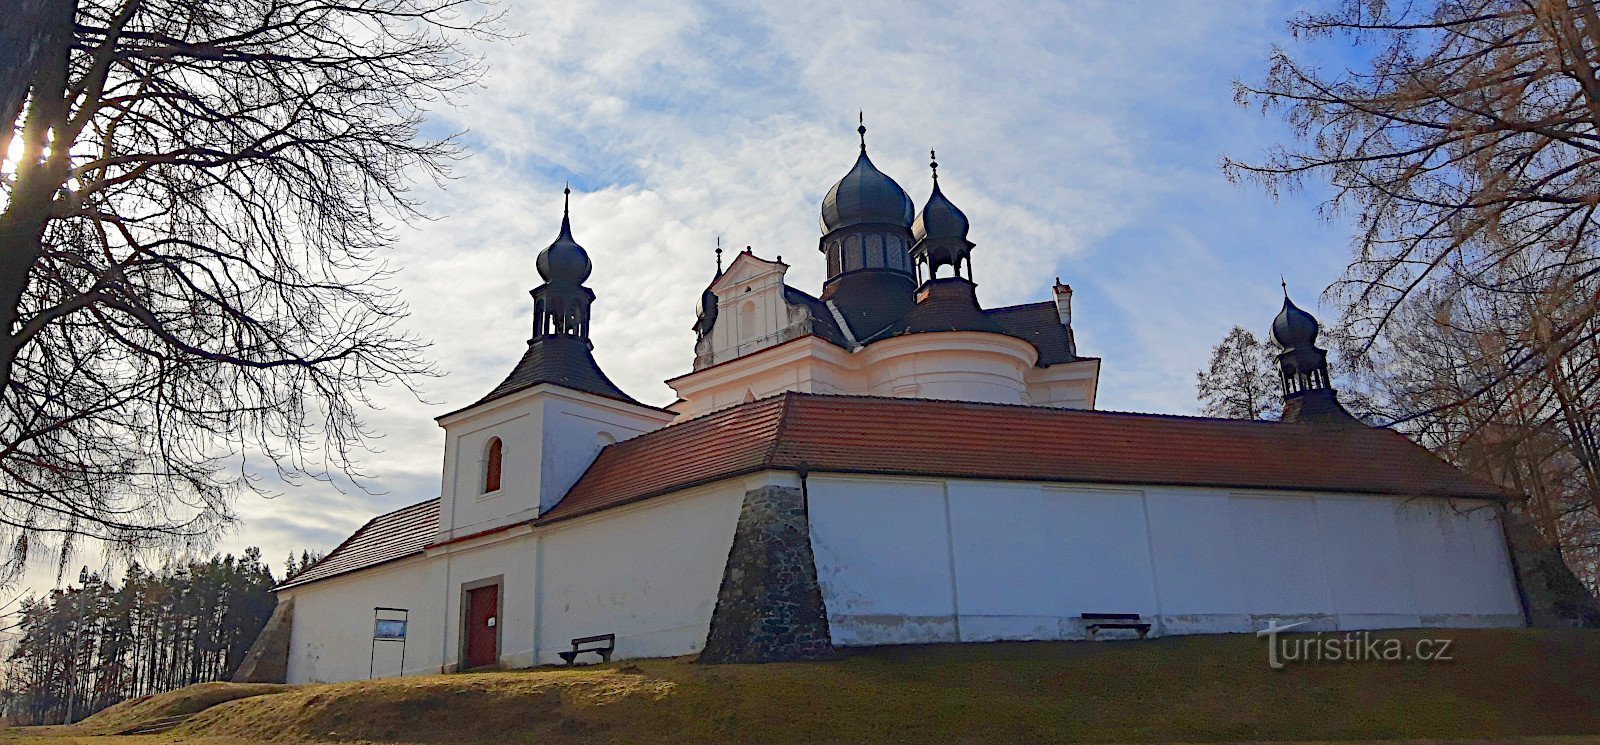 Trhové Sviny - romarska baročna cerkev Svete Trojice